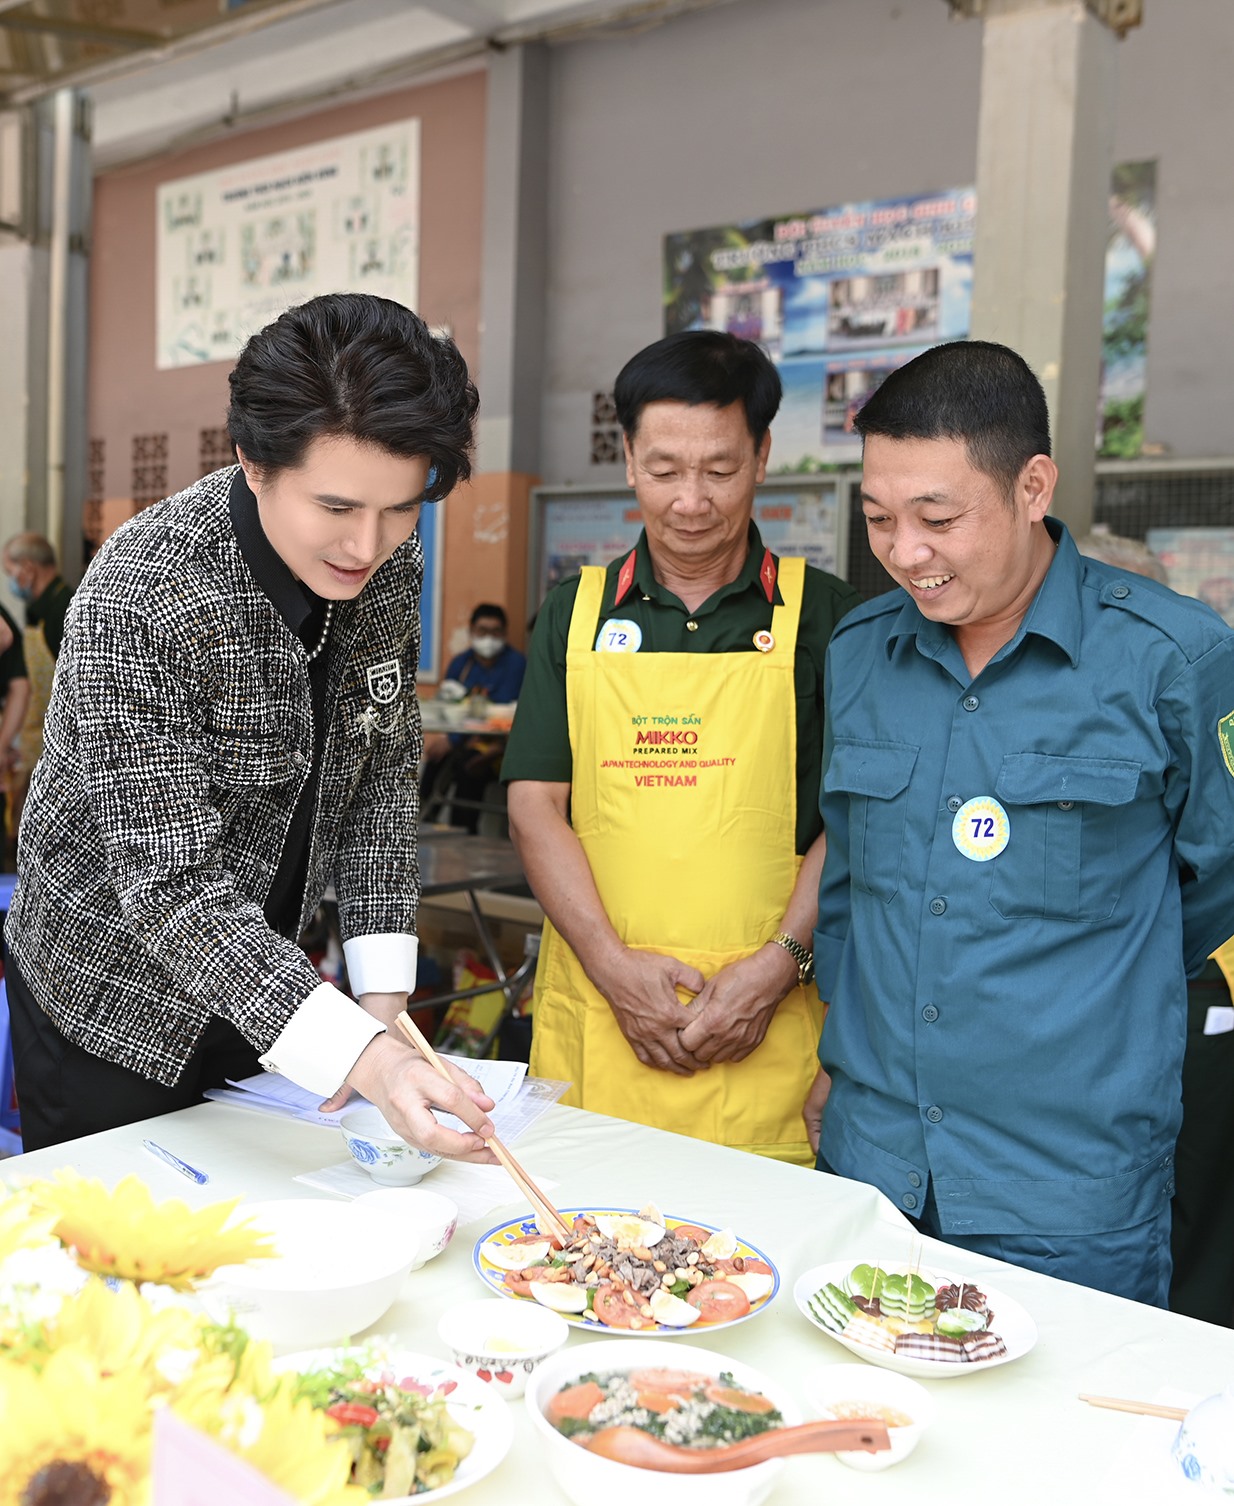 Hội thi nấu ăn “Khi đàn ông vào bếp” với chủ đề “Vào bếp bằng cả trái tim” vừa diễn ra với sự tham gia của MC Vũ Mạnh Cường. Ảnh: Ban tổ chức.